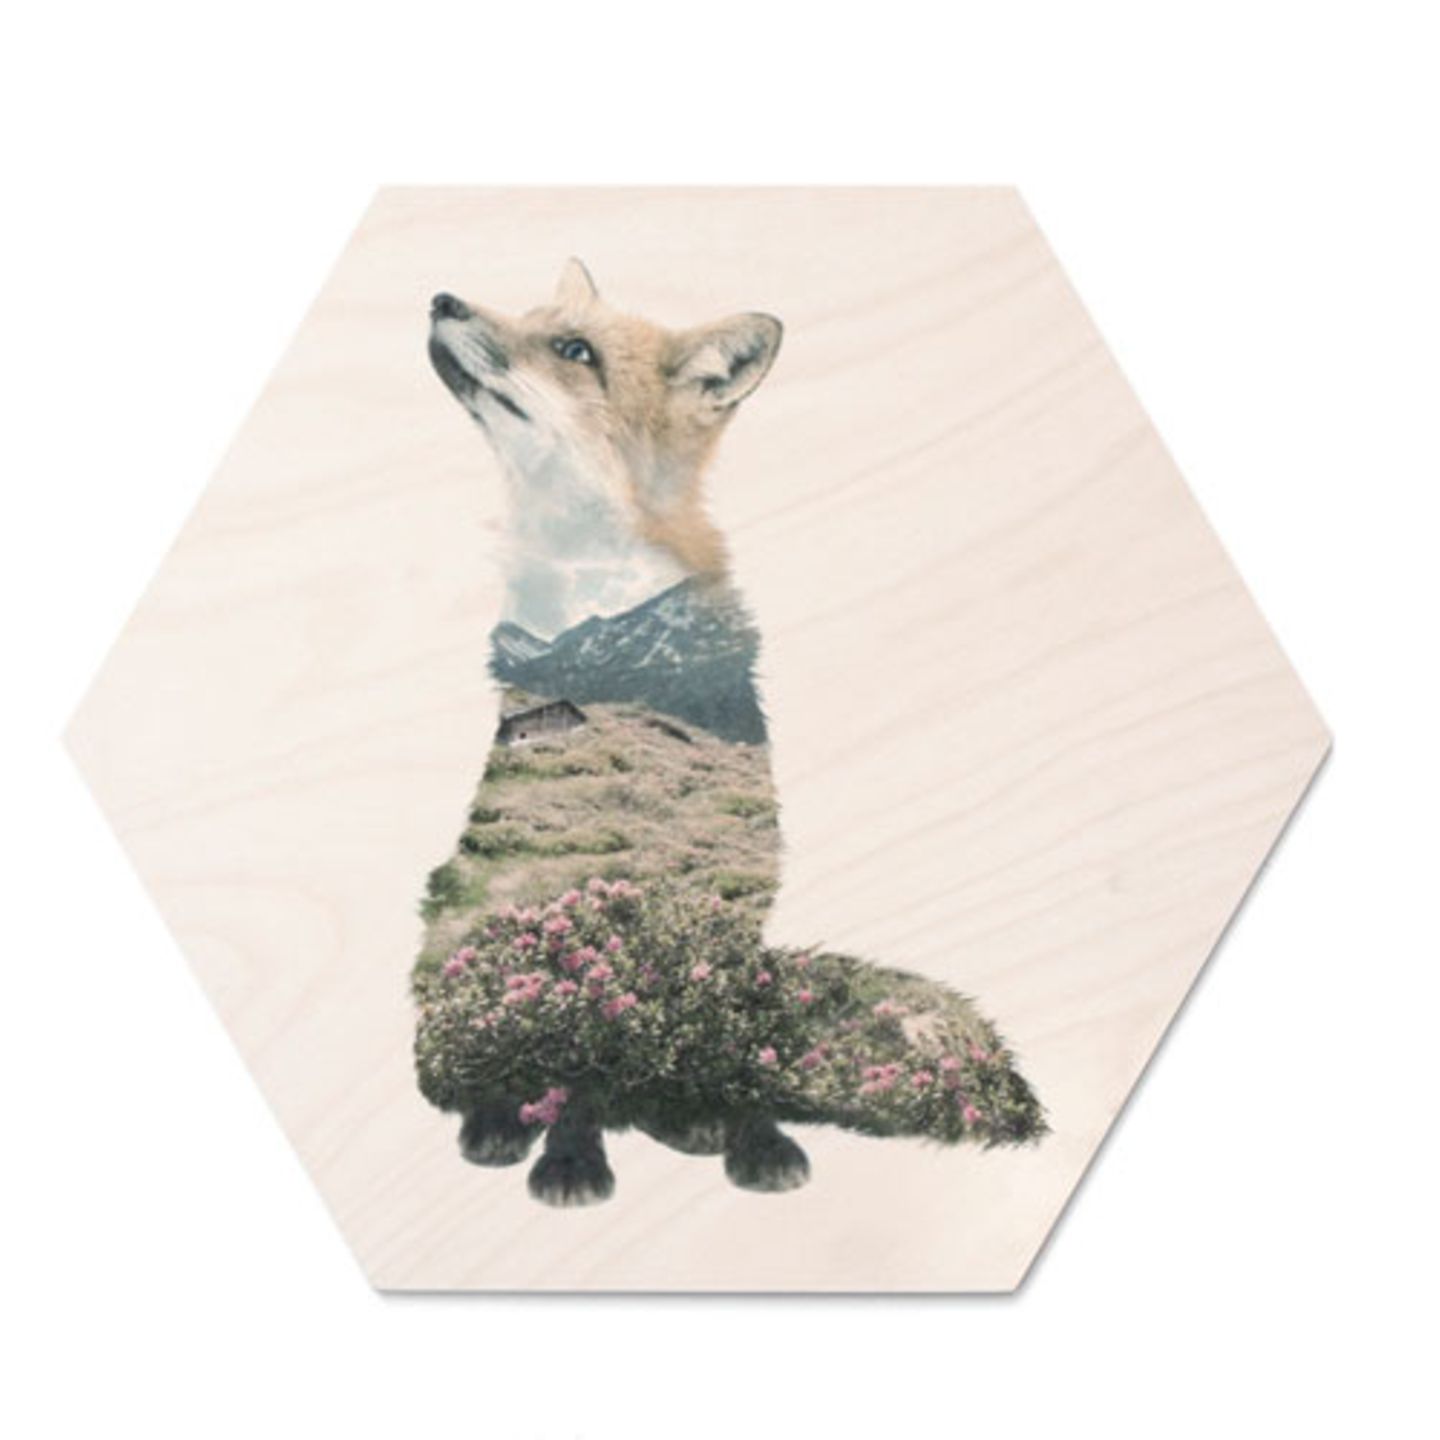 Eine interessante Alternative zu Postern: Motive, die auf Holz statt auf Papier, gedruckt sind. Das Designstudio WhatWeDo druckt seine Kunst als UV-Print in Handarbeit auf Plywood-Platten. "Fuchs Hexagon" über Lys Vintage, circa 70 Euro.